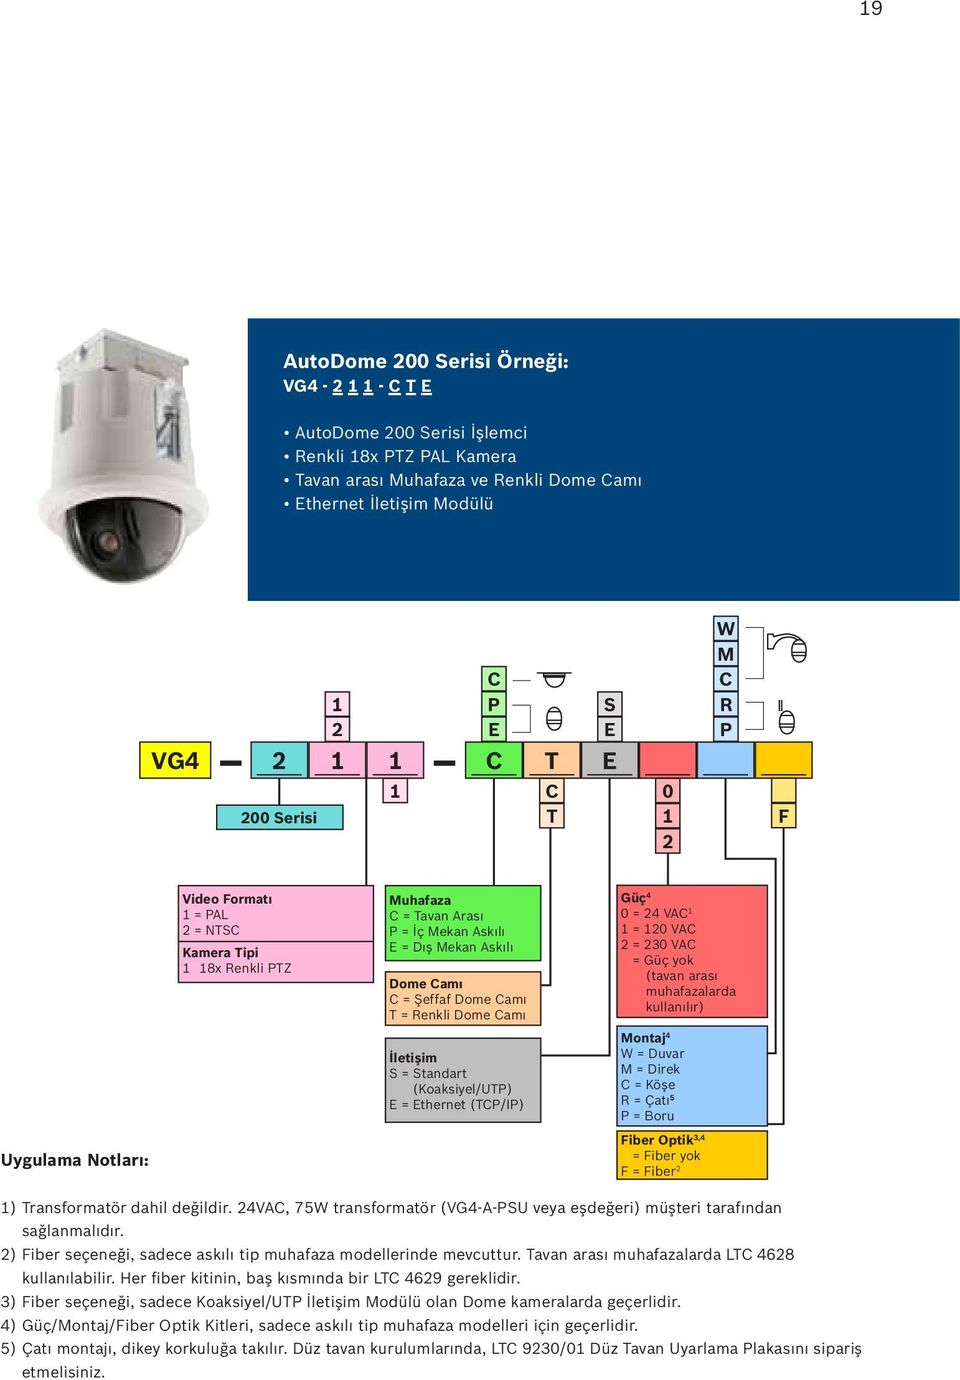 Renkli Dome Camı Güç 4 0 = 24 VAC 1 1 = 120 VAC 2 = 230 VAC = Güç yok (tavan arası muhafazalarda kullanılır) İletişim S = Standart (Koaksiyel/UTP) E = Ethernet (TCP/IP) Montaj 4 W = Duvar M = Direk C